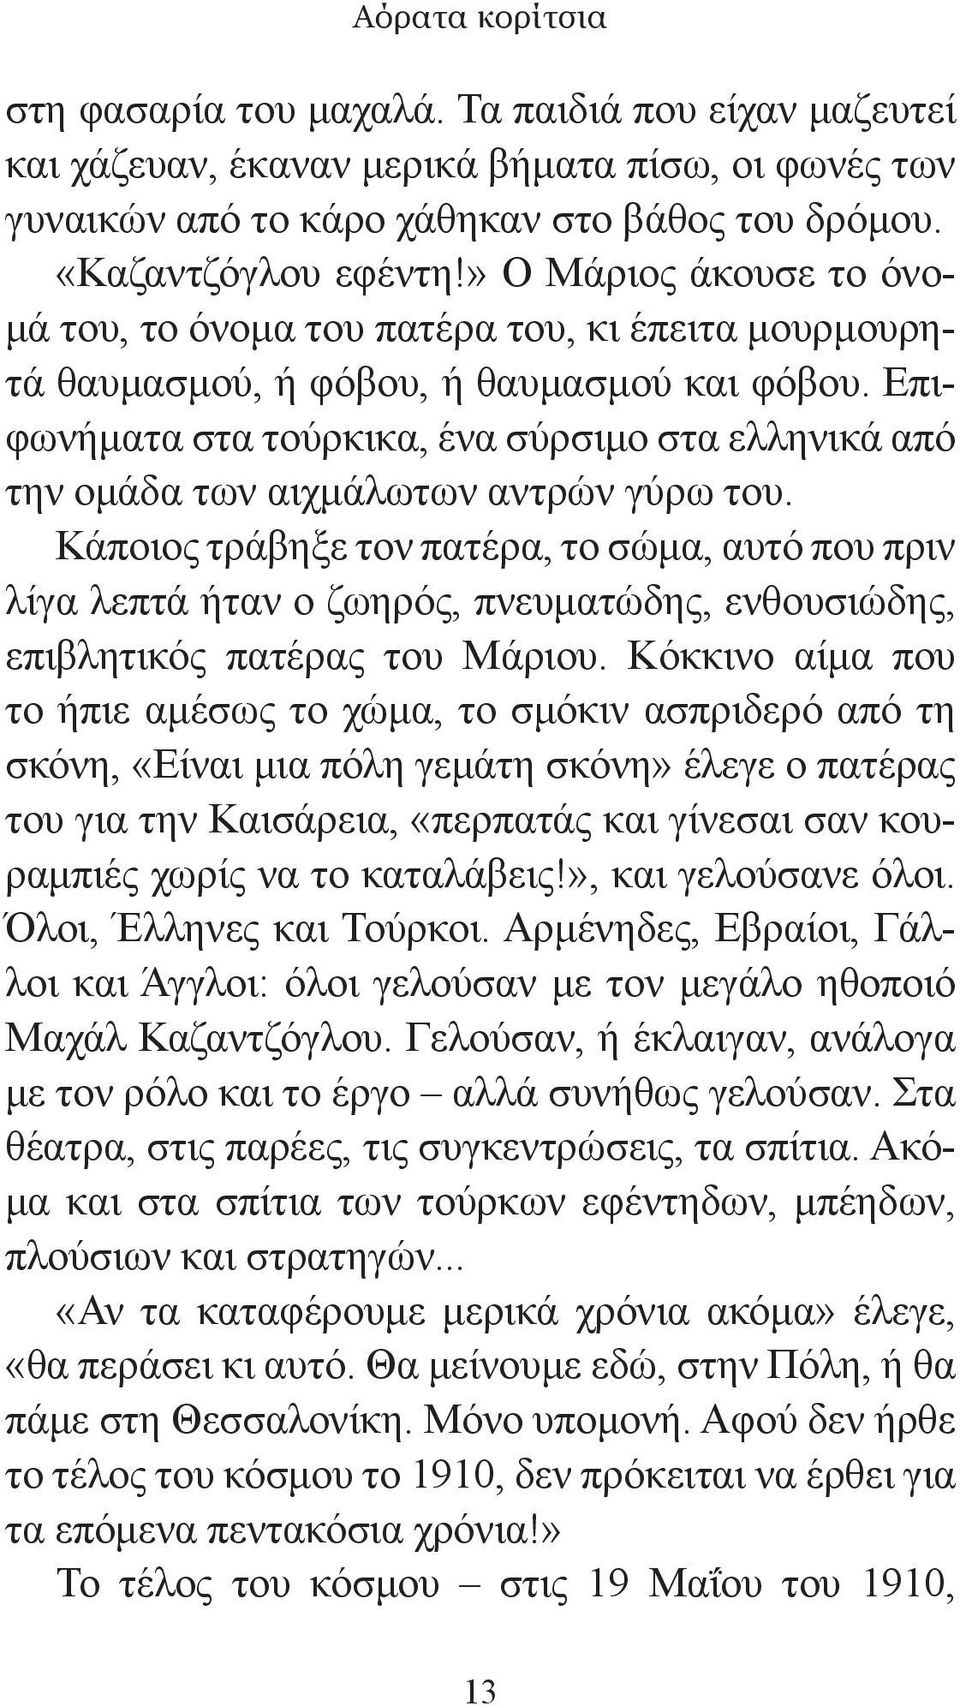 Επιφωνήματα στα τούρκικα, ένα σύρσιμο στα ελληνικά από την ομάδα των αιχμάλωτων αντρών γύρω του.